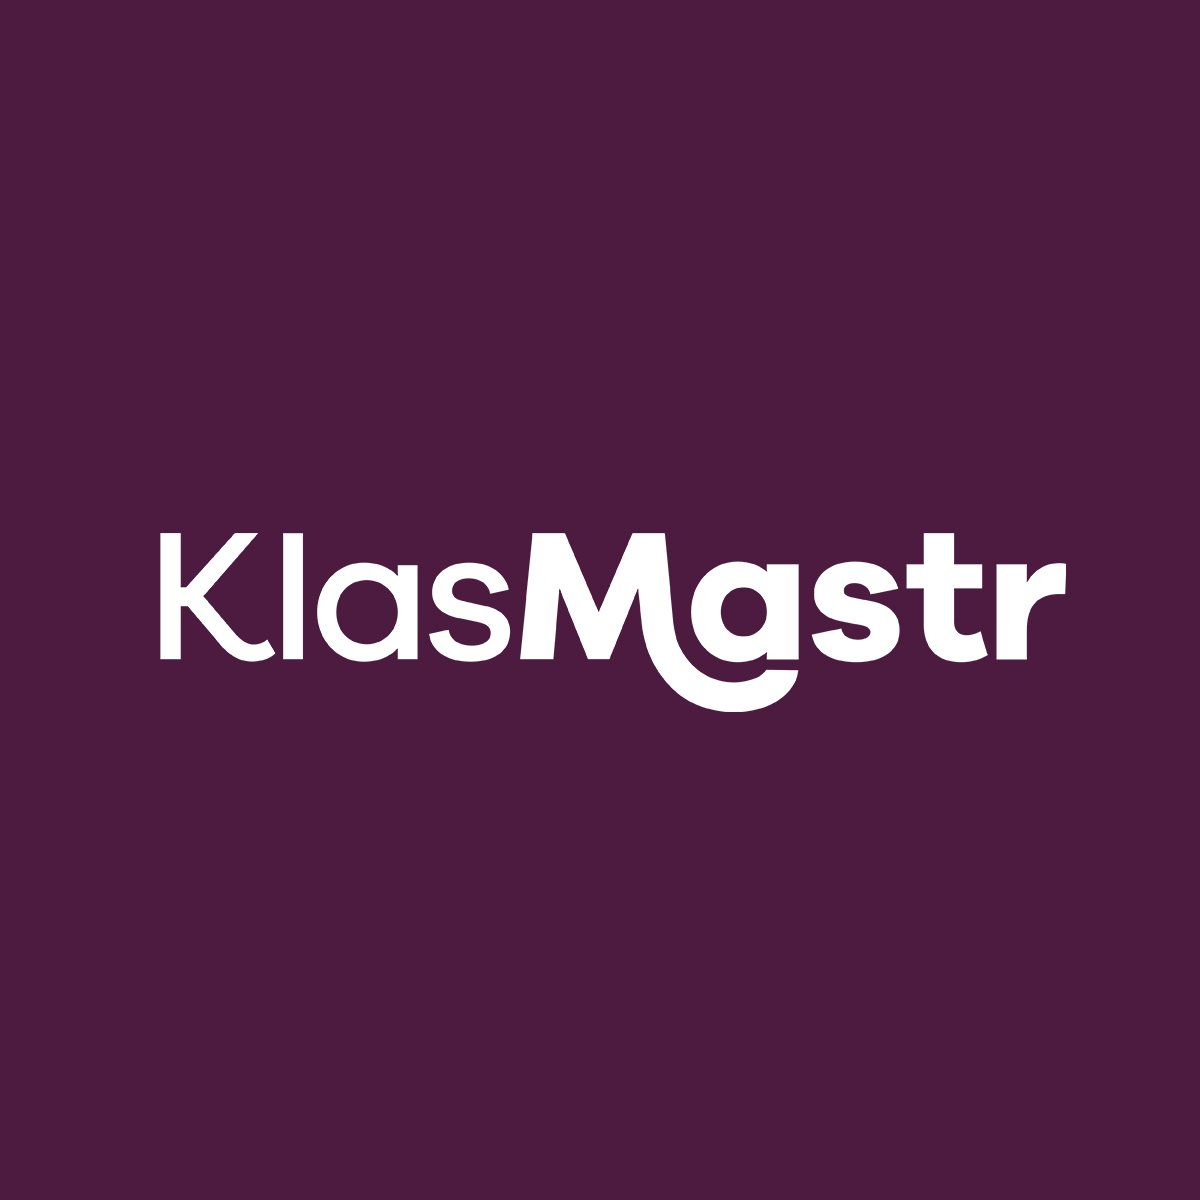 KlasMastr logo